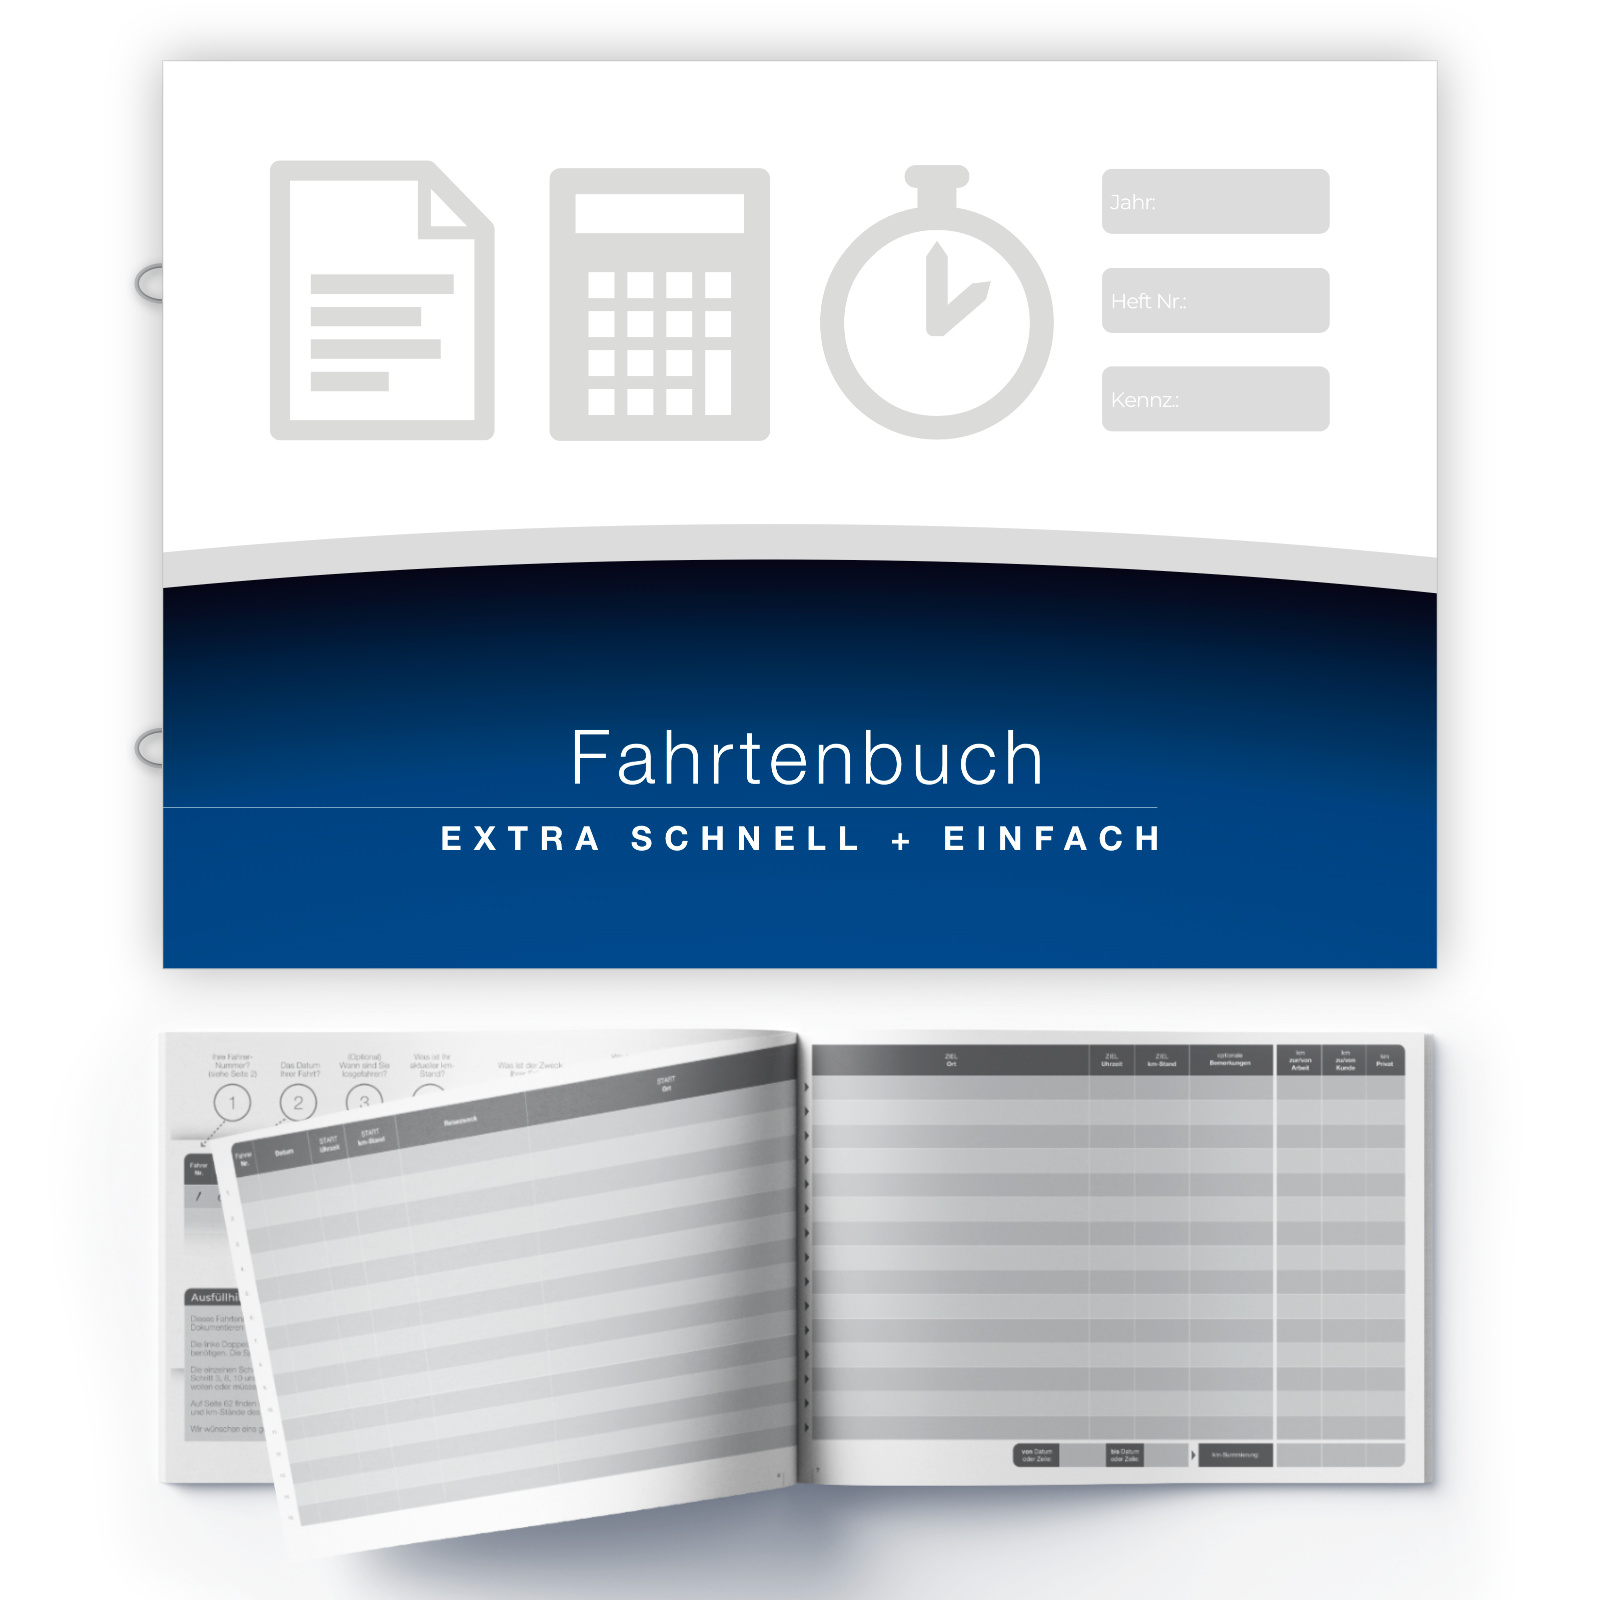 Lobsing Fahrtenbuch - EXTRA SCHNELL UND EINFACH 